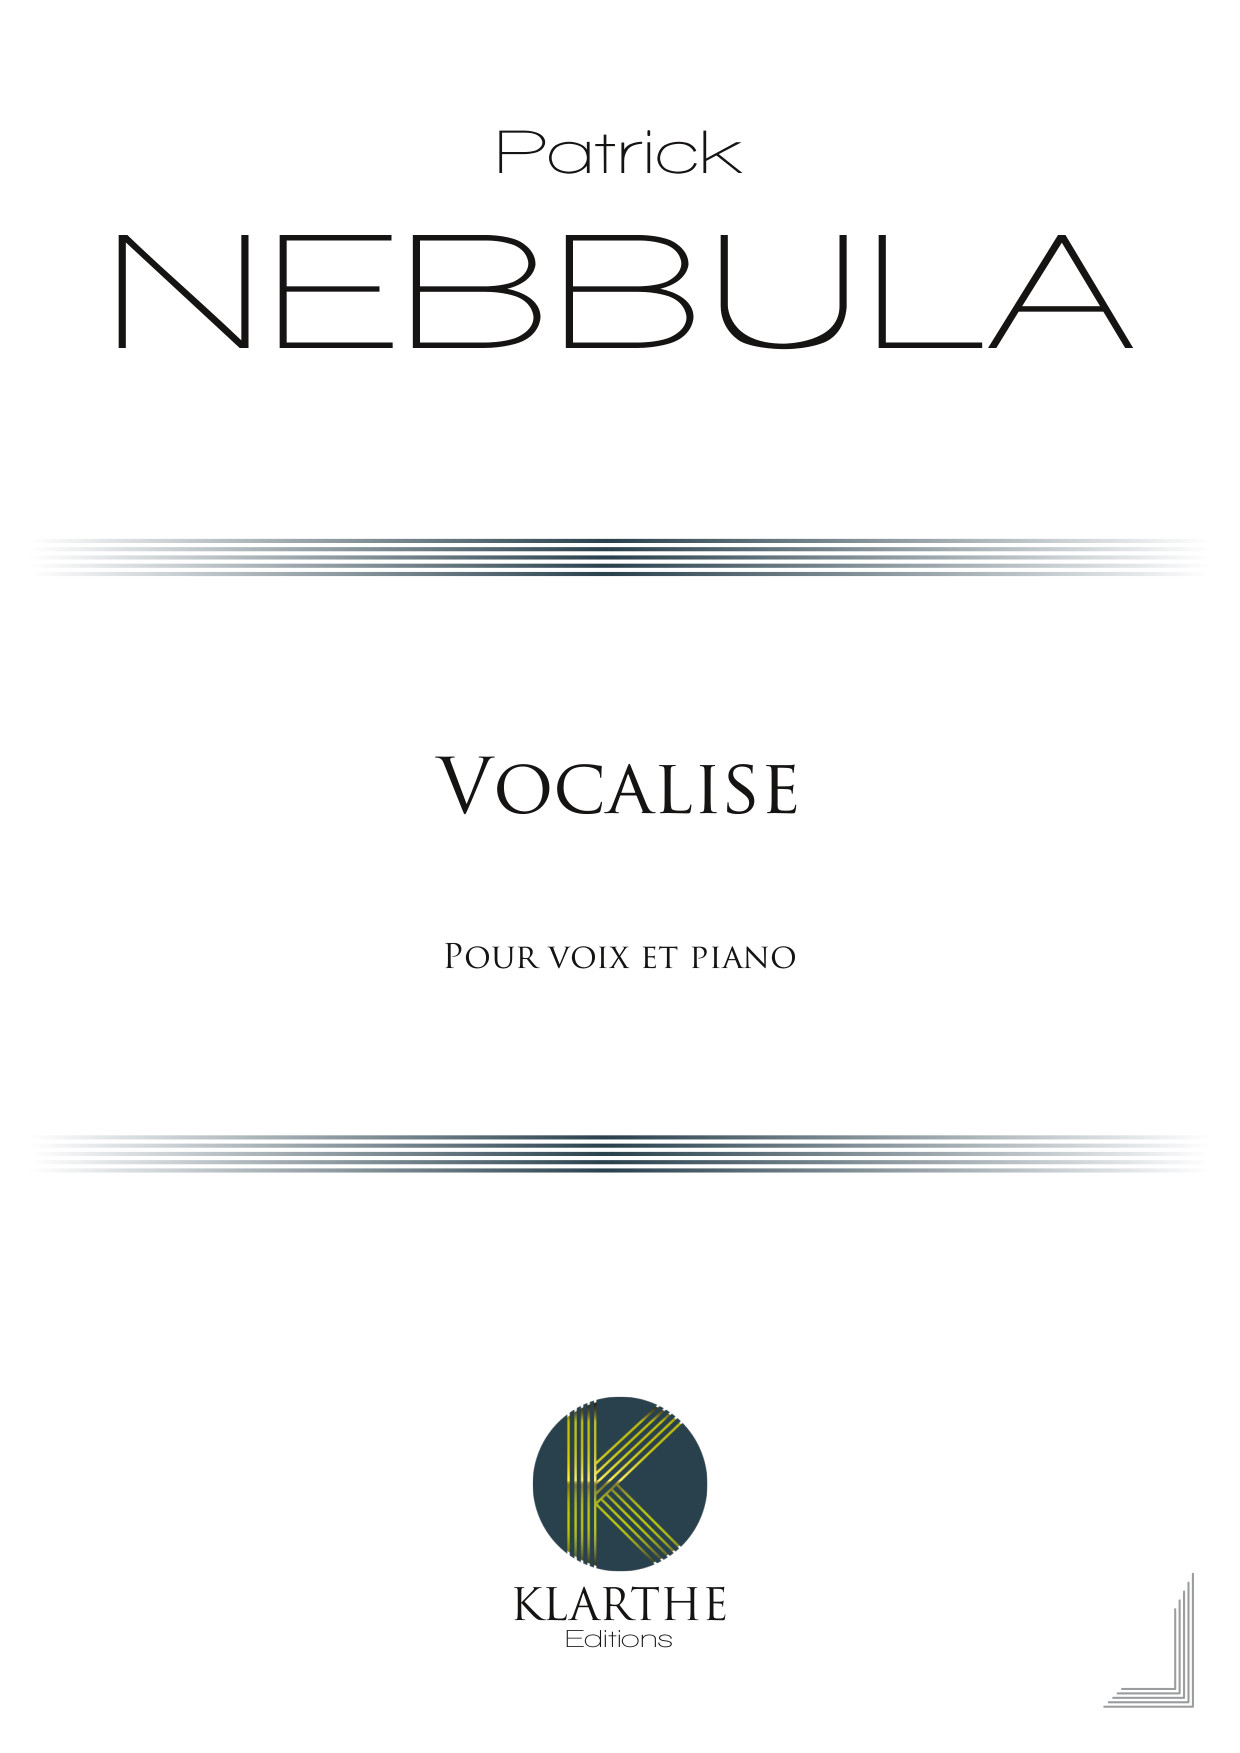 Vocalise (NEBBULA PATRICK)